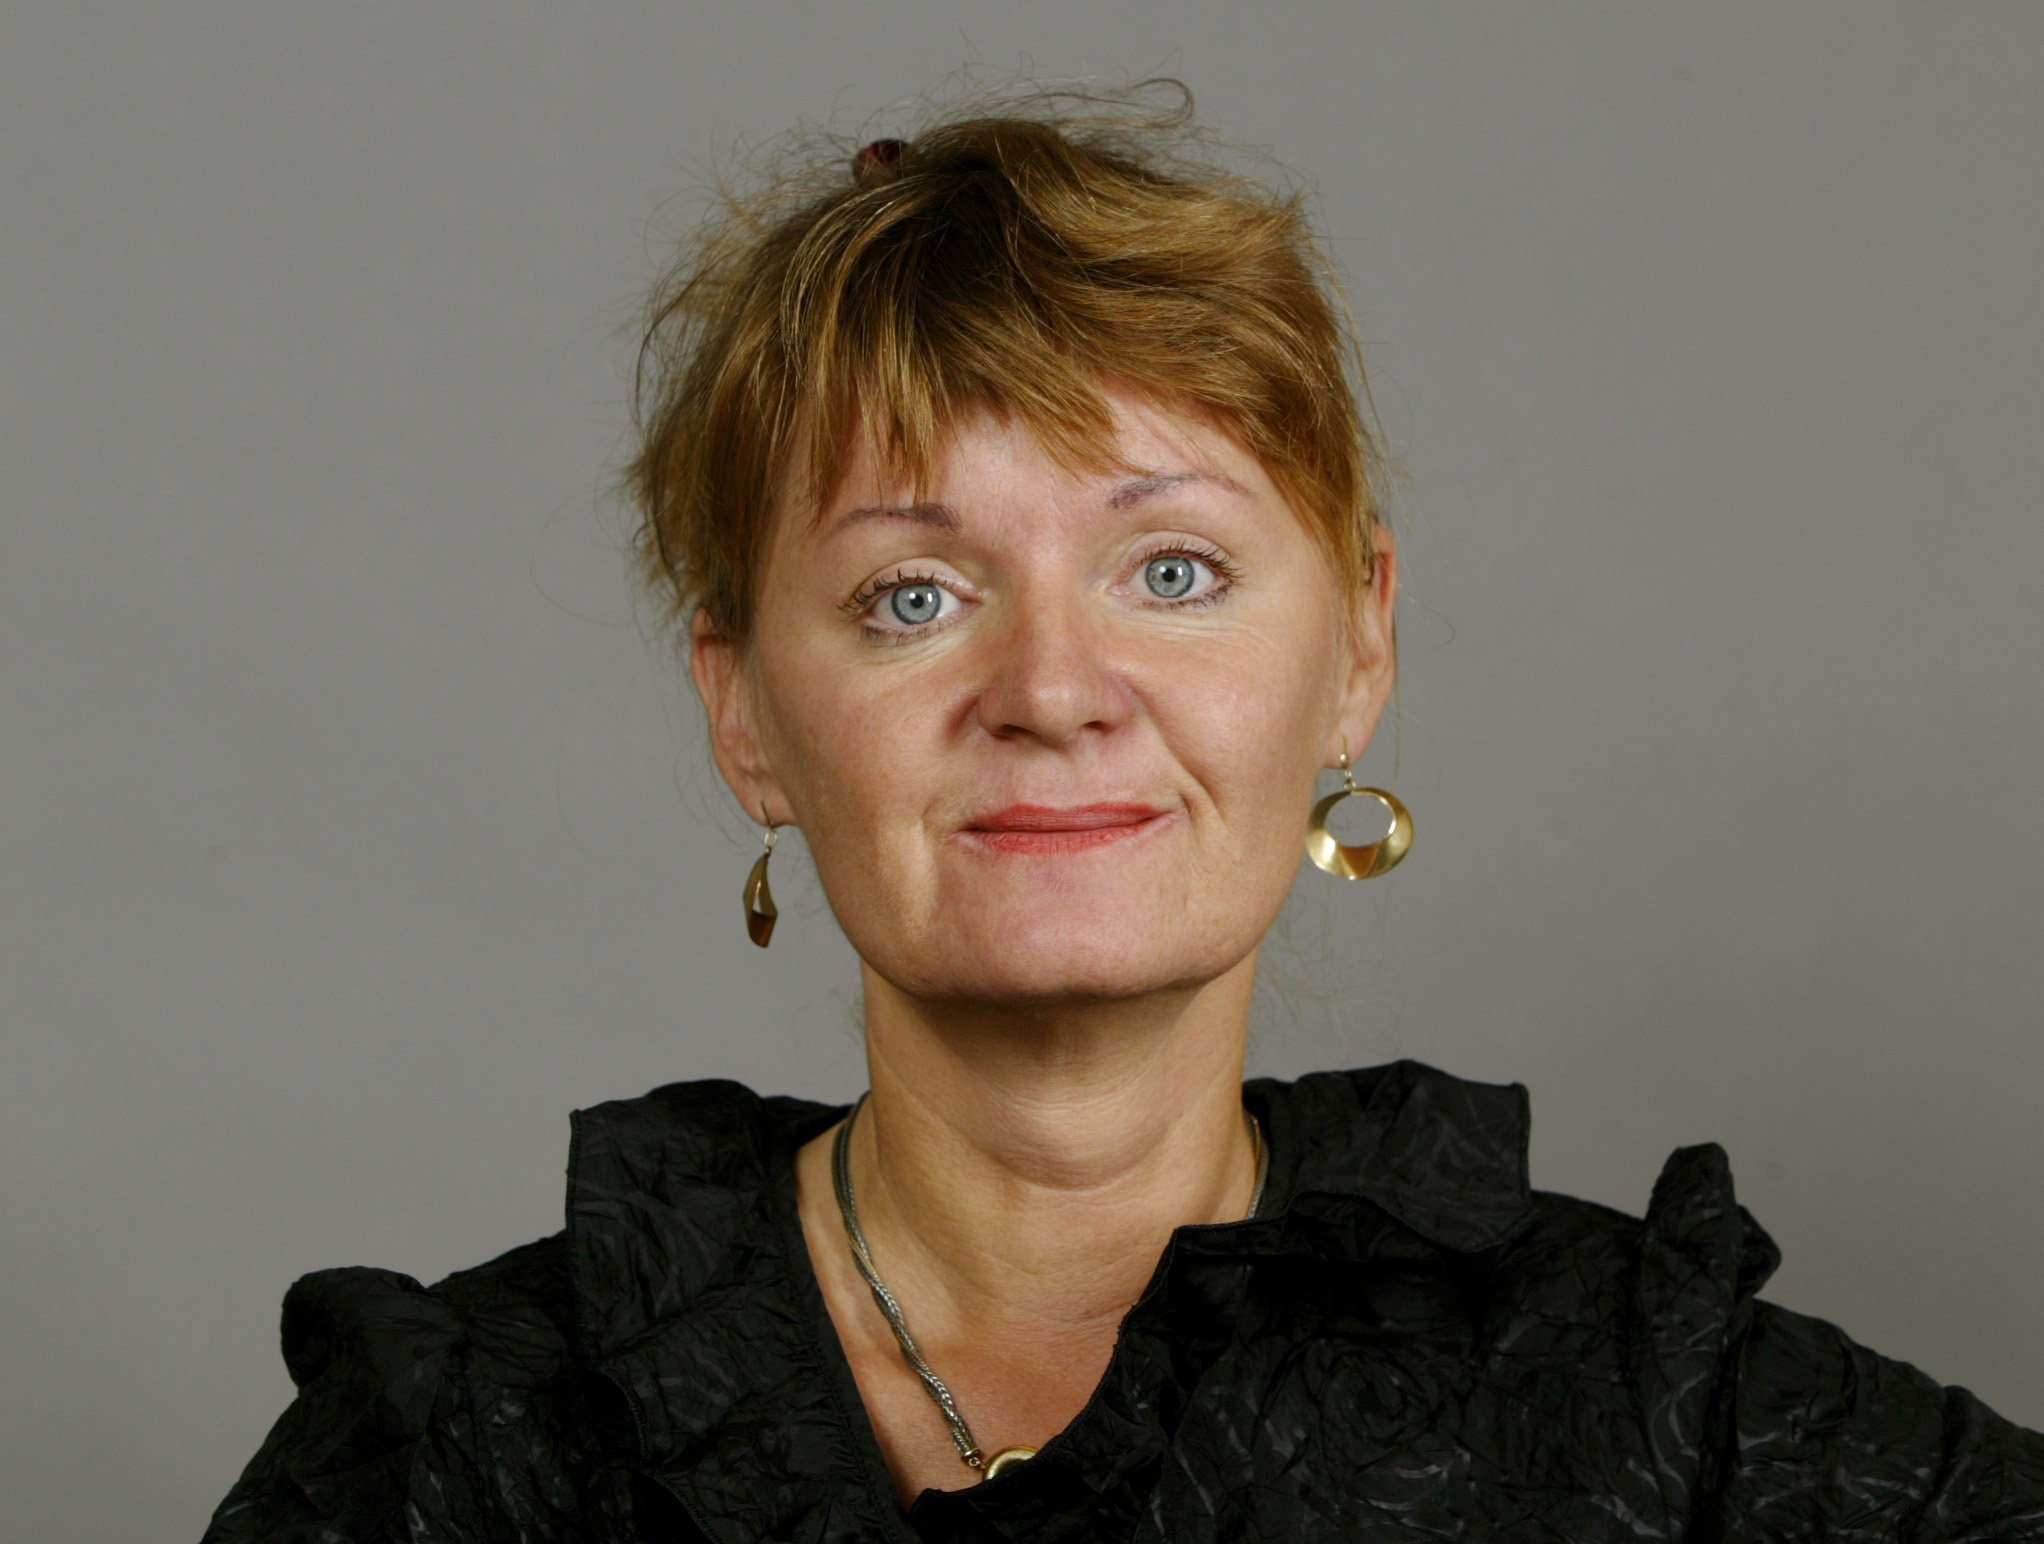 Feministiskt initiativ, Riksdagsvalet 2010, Carina Hägg, Gudrun Schyman, Feminism, Sverigedemokraterna, Alliansen